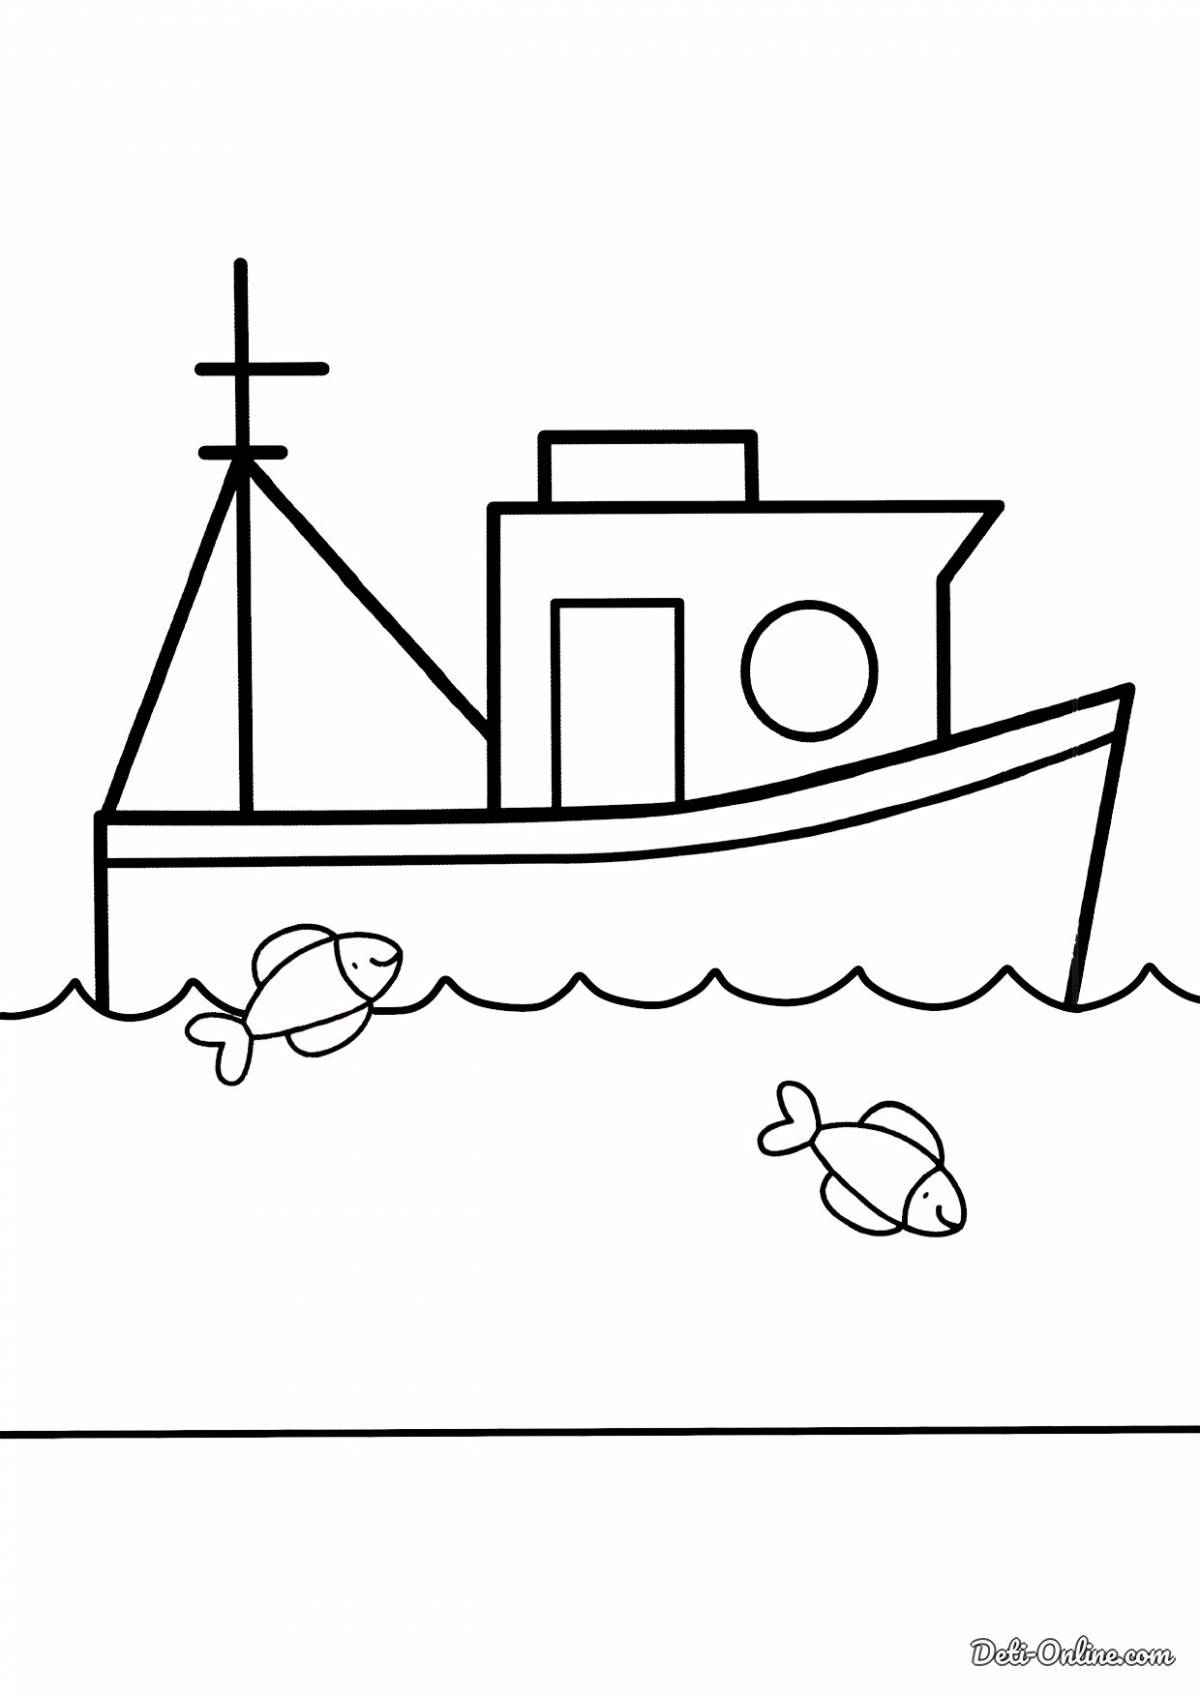 Милая раскраска лодки для детей 6-7 лет